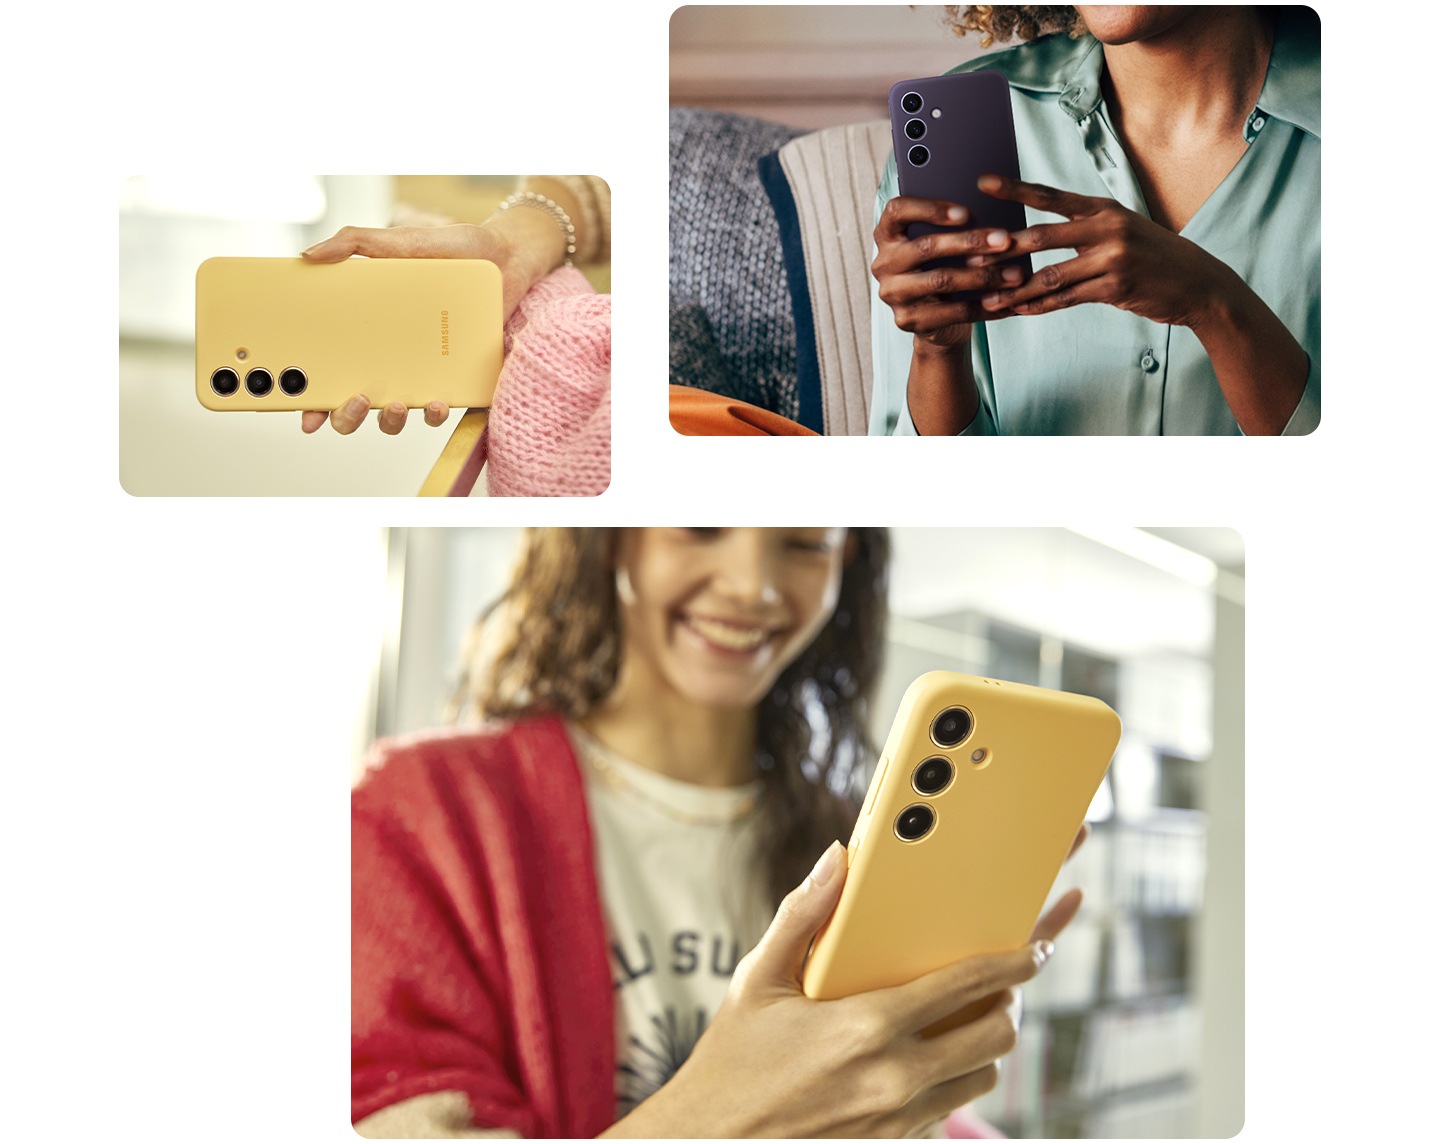 Ở phía trên bên trái, một người phụ nữ đang thoải mái cầm chiếc điện thoại Galaxy S24 trong một chiếc ốp lưng Silicone màu tím. Bên dưới, hai bức ảnh khác nhau cho thấy một người cầm một chiếc điện thoại Galaxy S24 Plus trong một chiếc ốp lưng Silicone màu vàng với một tay, cho thấy sự dễ dàng khi cầm chiếc điện thoại này.